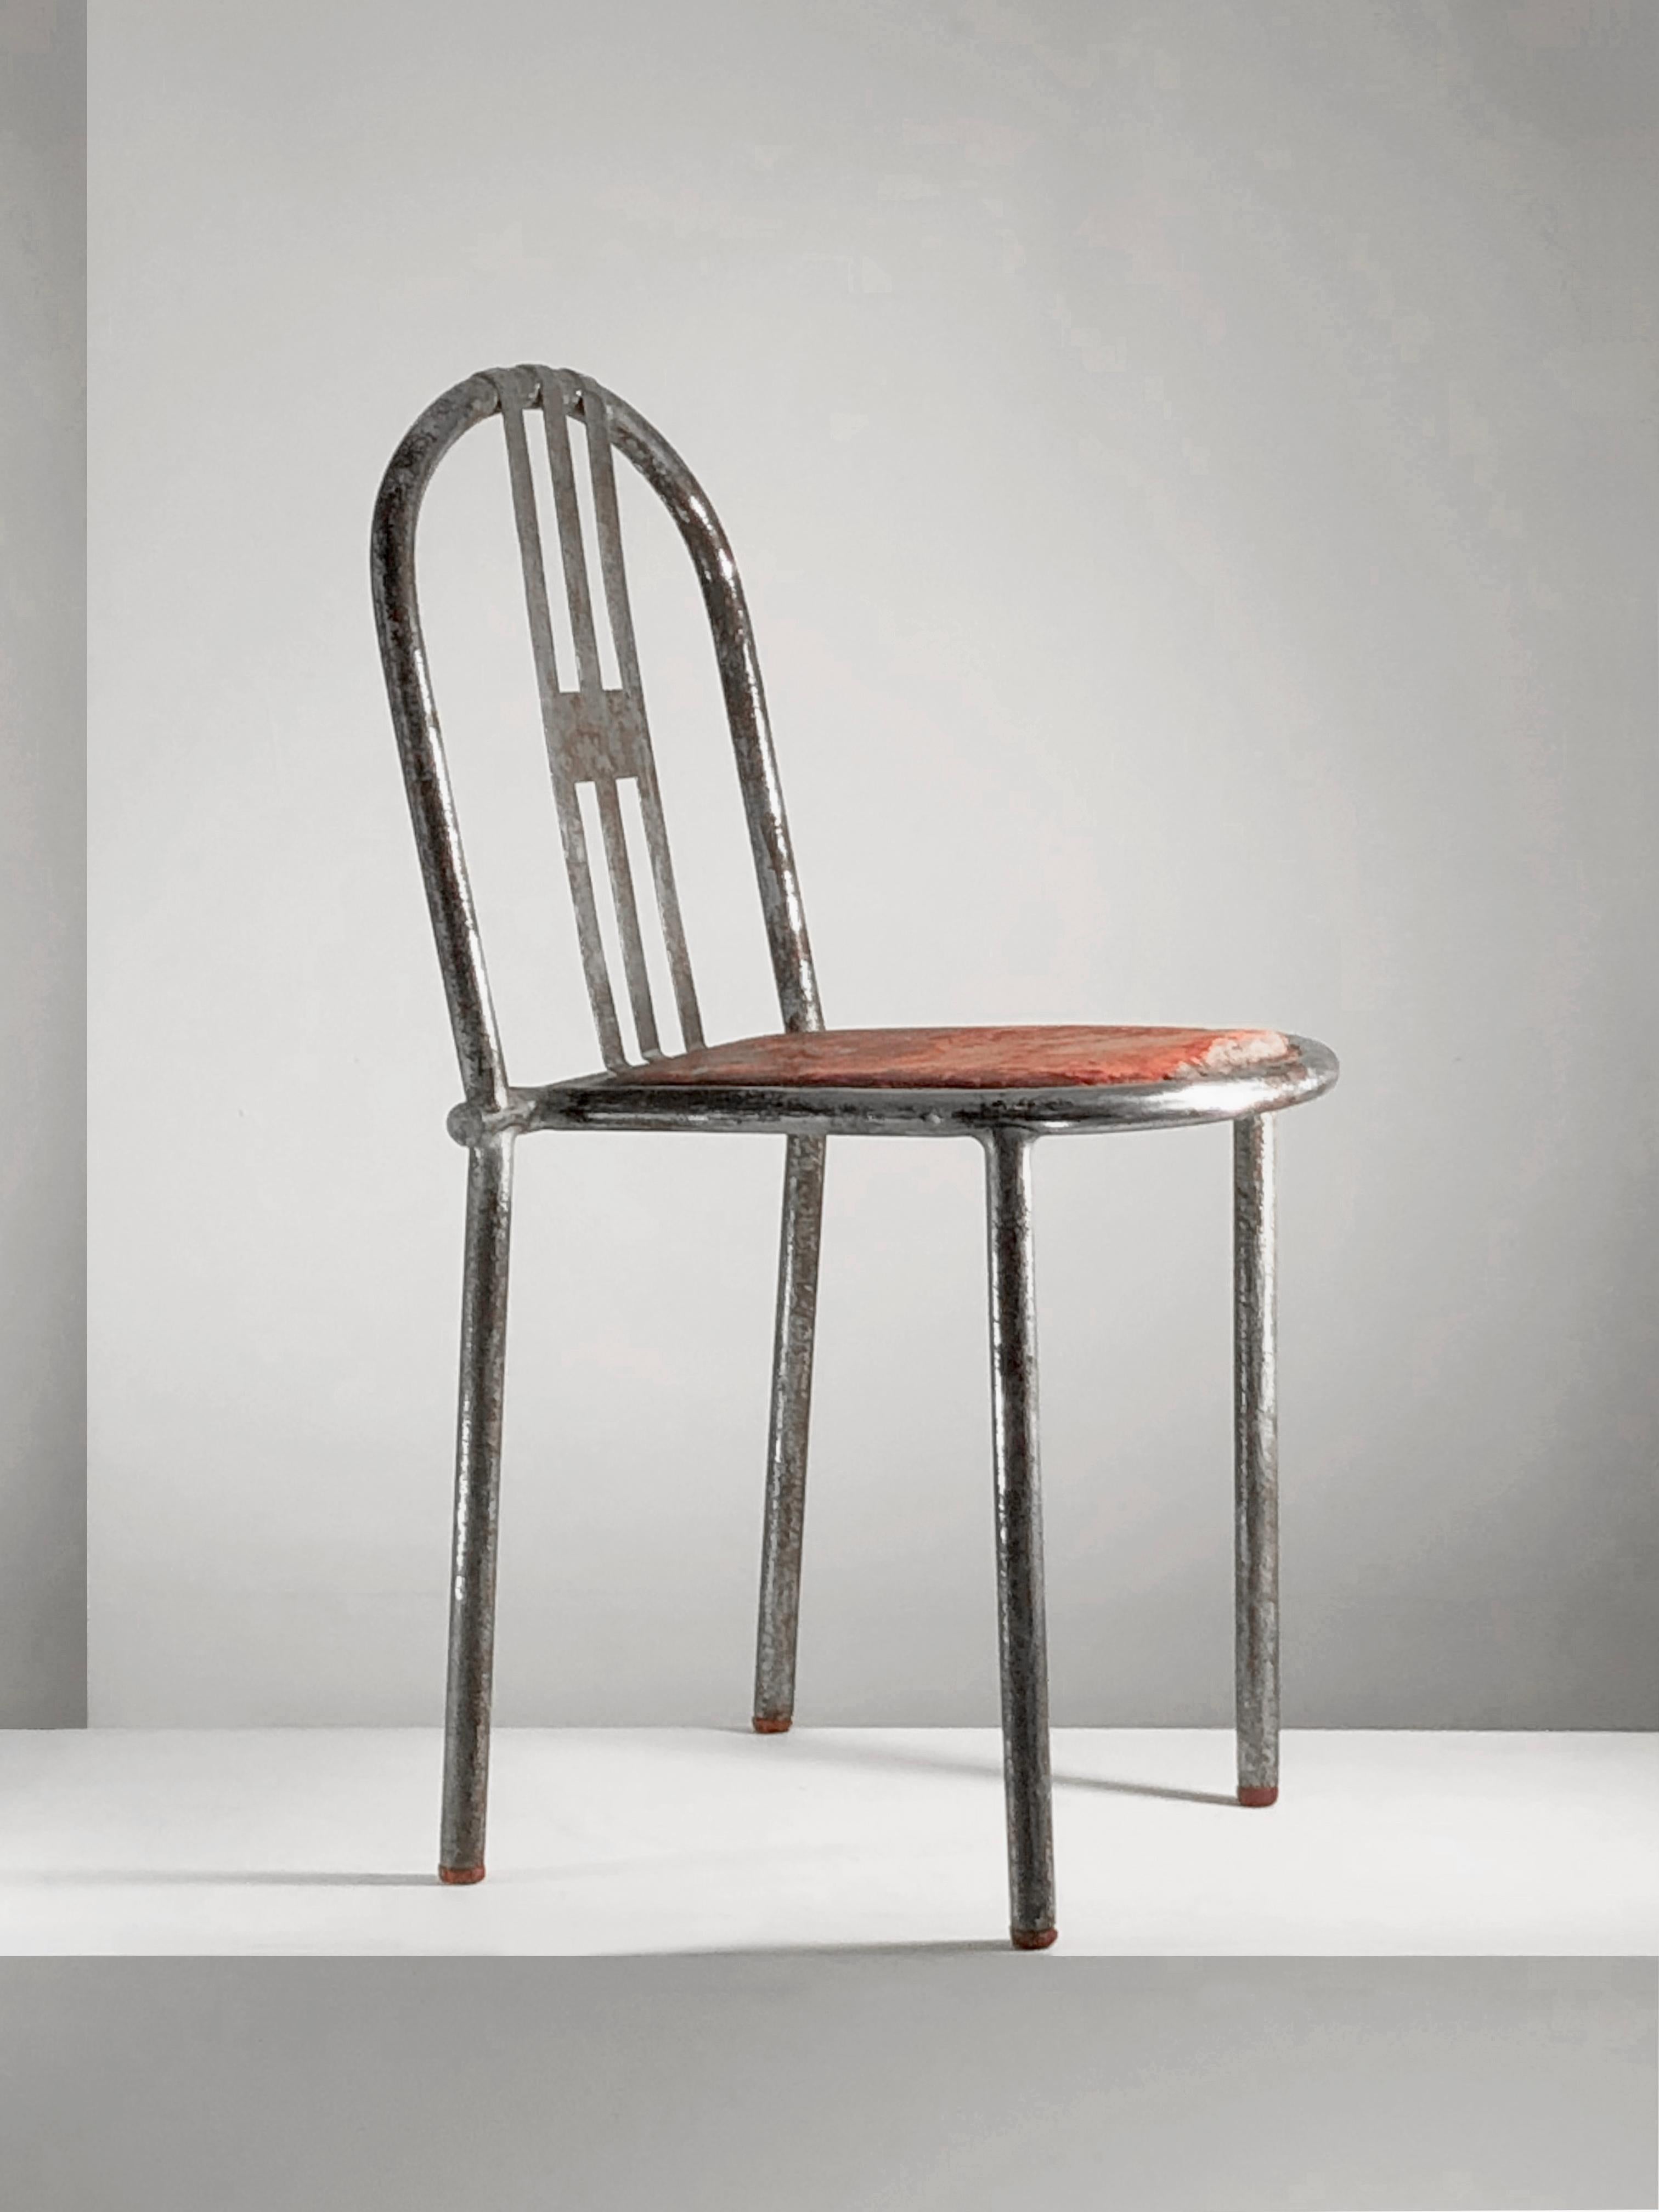 Nous présentons 2 pièces rares en vente une à une sur 1stDibs :
la version la plus ancienne et la plus rare de l'emblématique chaise Tubor créée par l'architecte français Robert Mallet-Stevens, certainement à la fin des années 1920